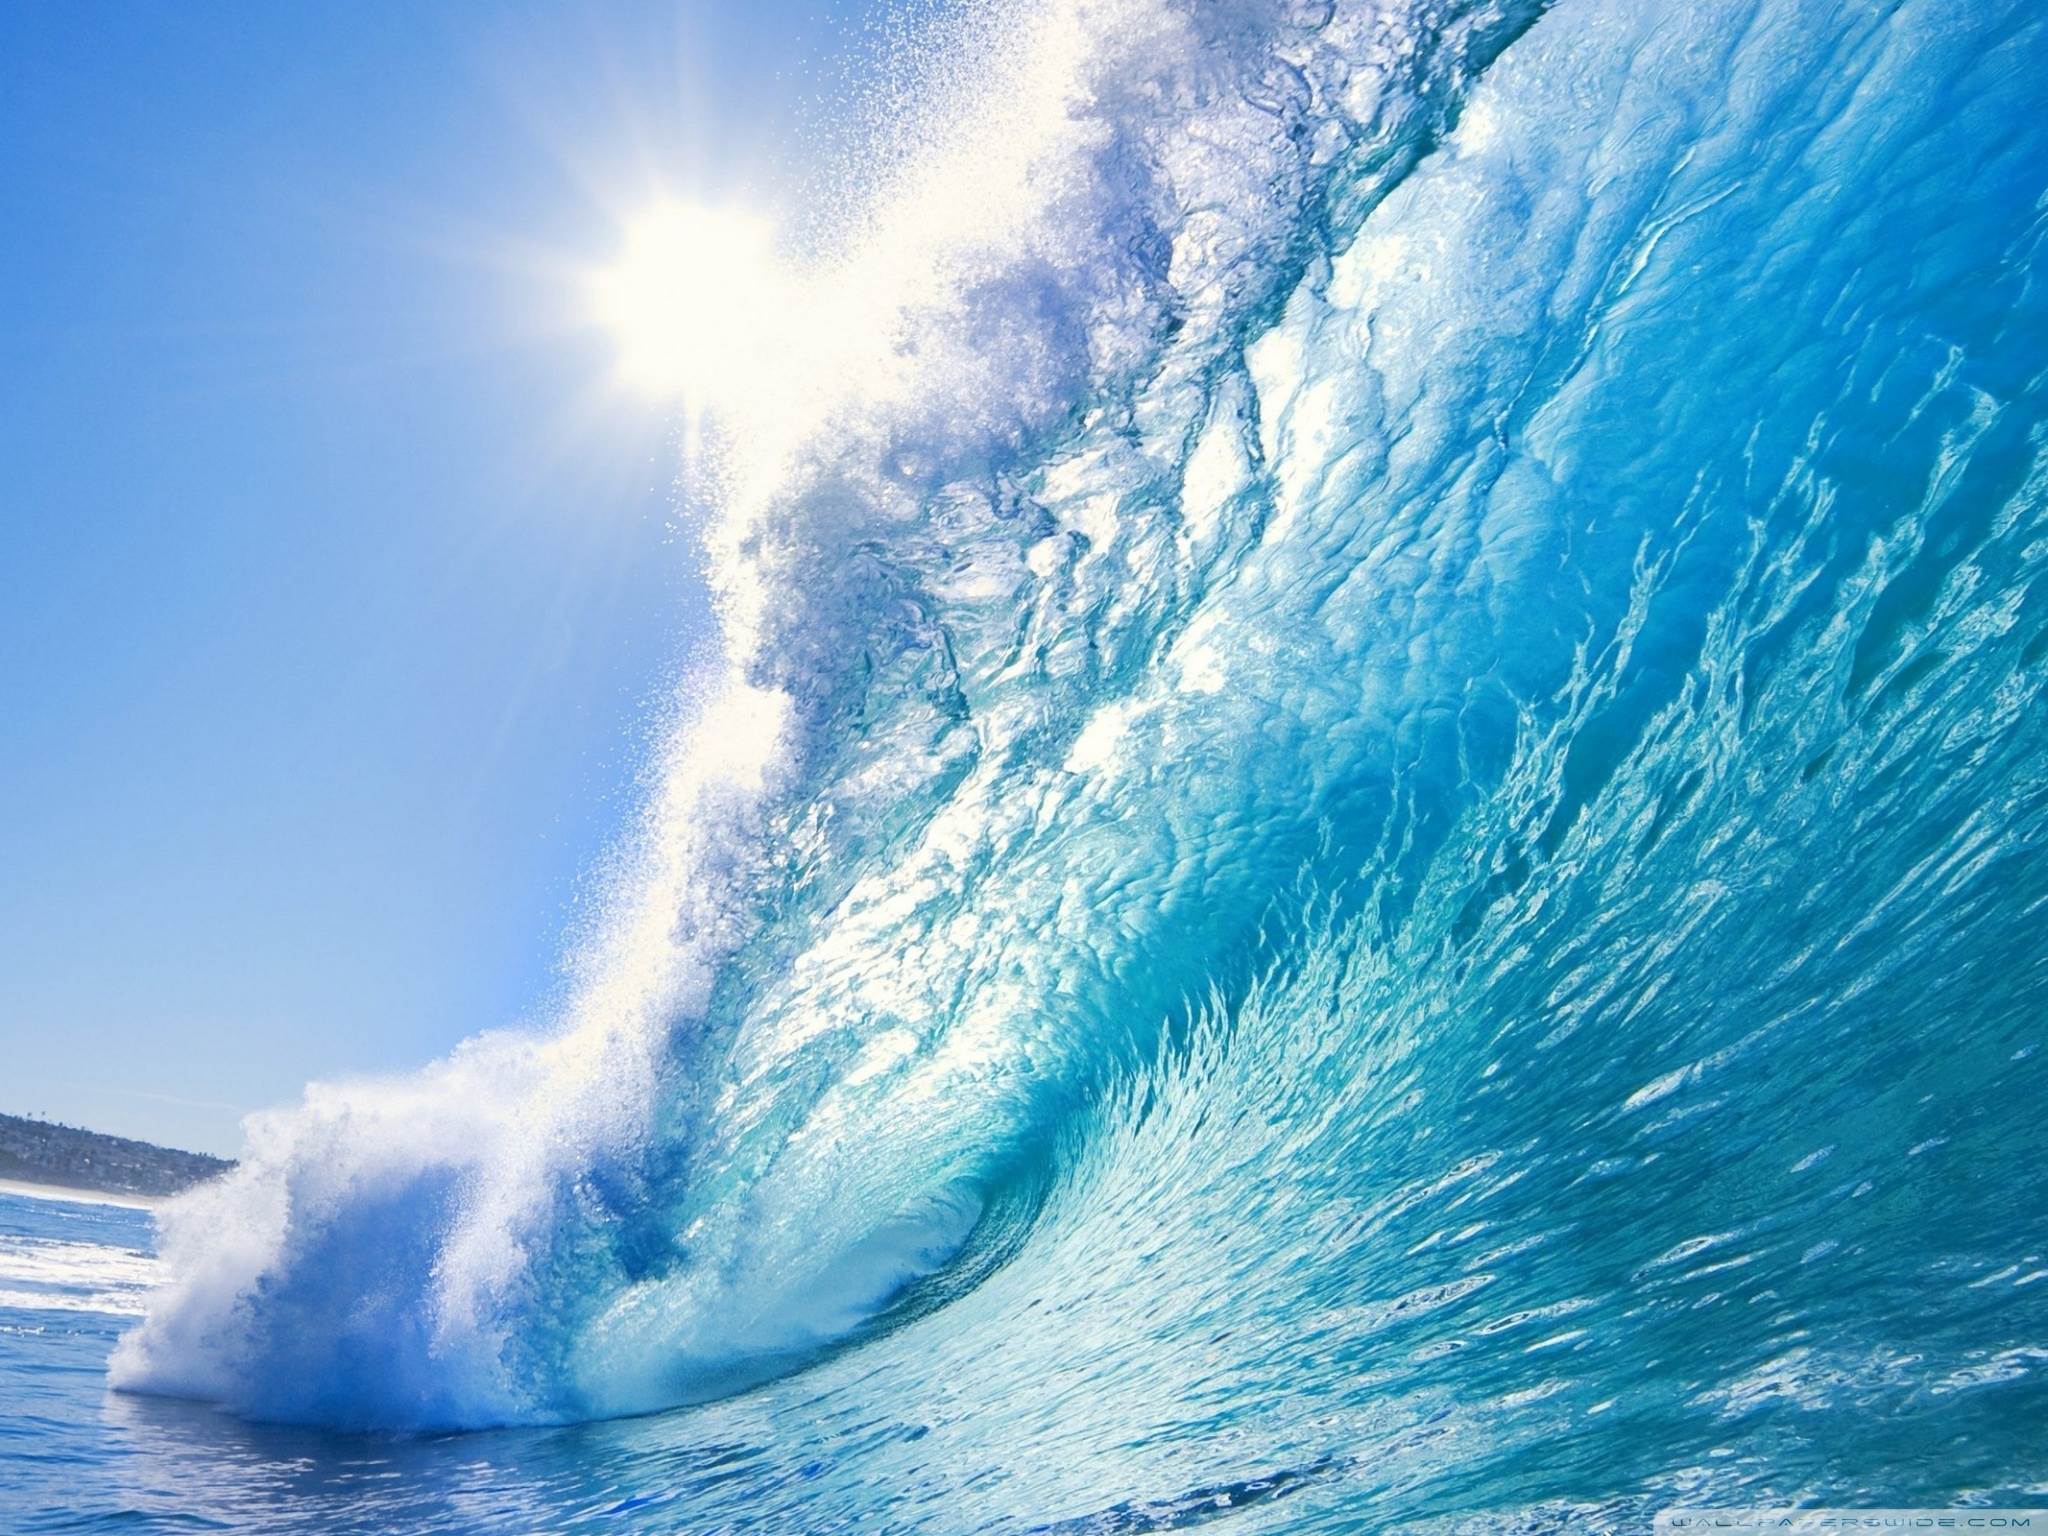 ocean waves wallpaper,wave,wind wave,sky,ocean,daytime